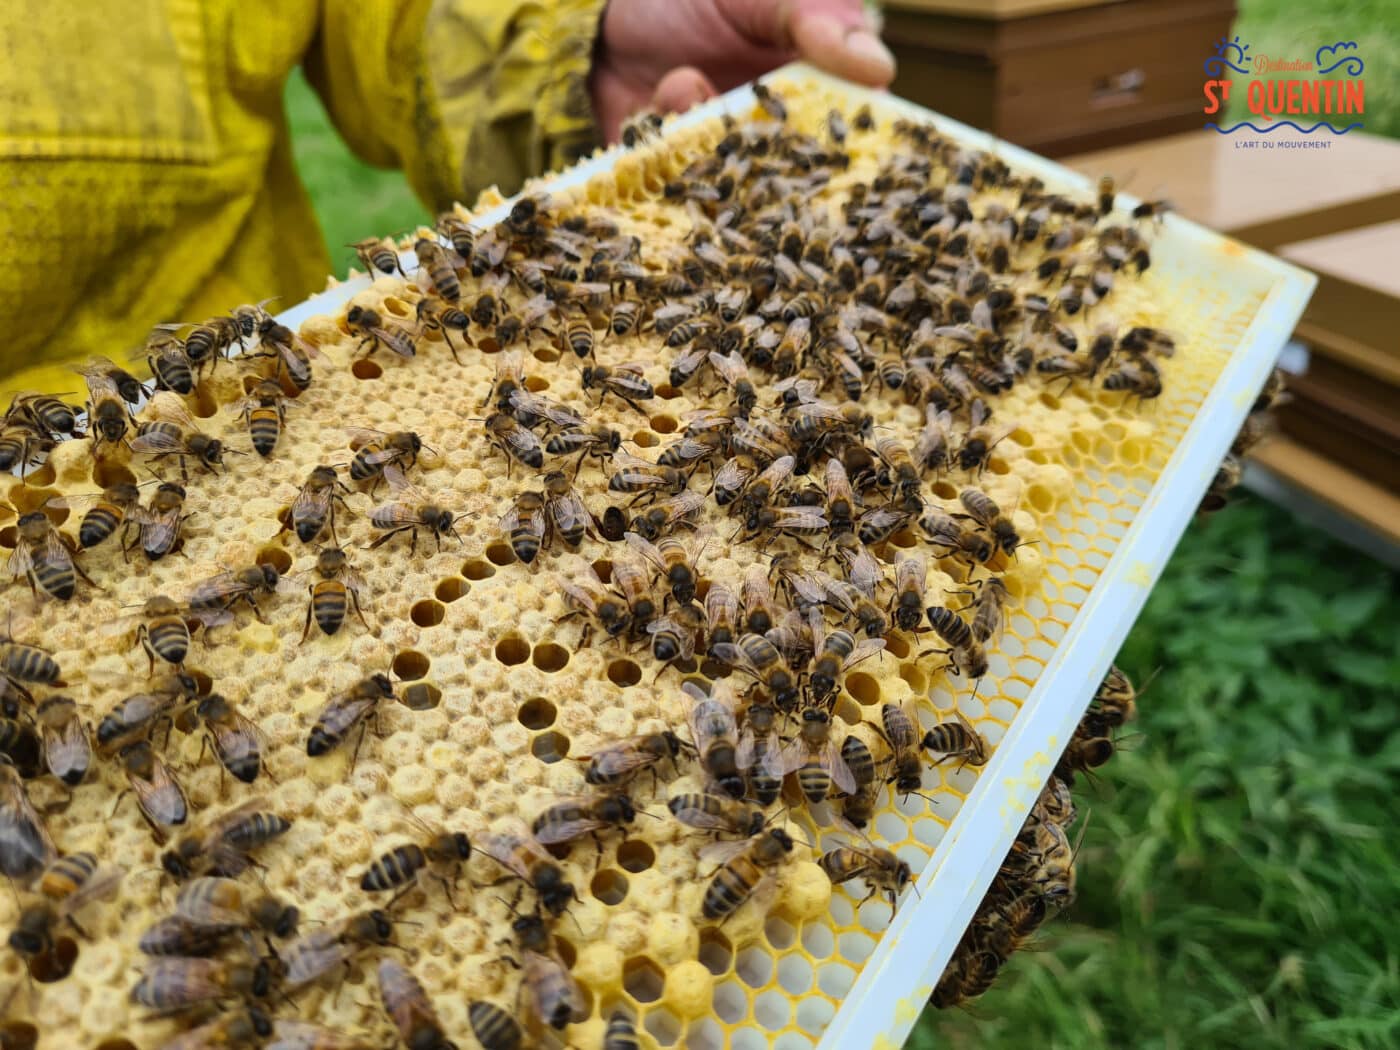 ambassadeur les abeilles de francilly 09 - Office de tourisme du Saint-Quentinois